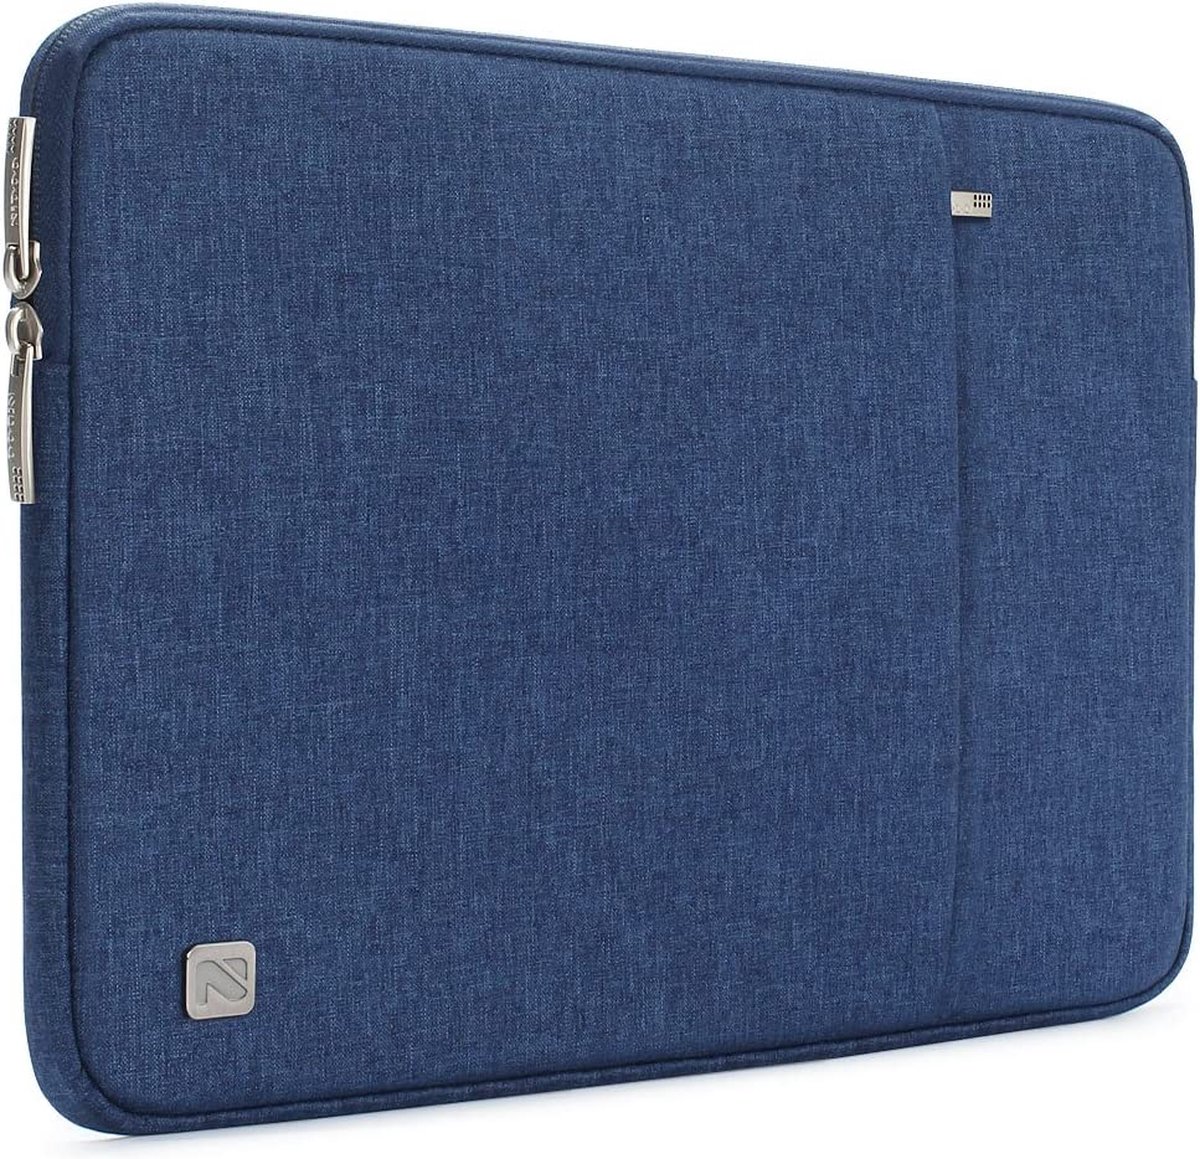 waterdicht materiaal Laptop Sleeve Hoes draagbaar Notebook hoes draagtas antikras beschermende hoes draagtas beschermhoes, blauw